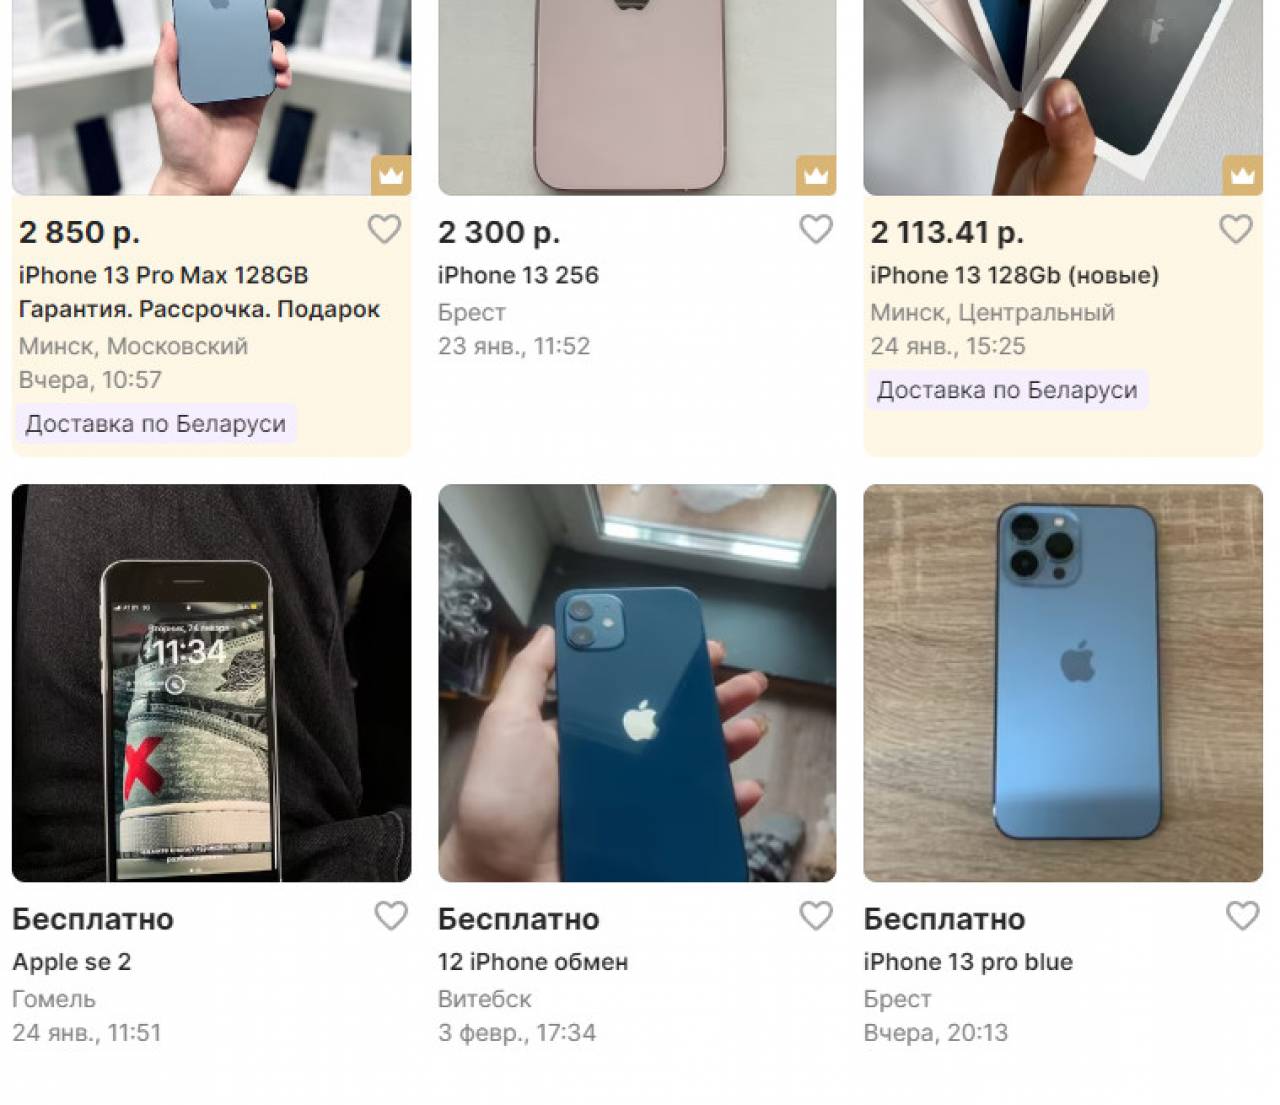 Жительница Берестовицы нашла в Сети iPhone всего за 800 рублей. Как думаете, купила или нет?